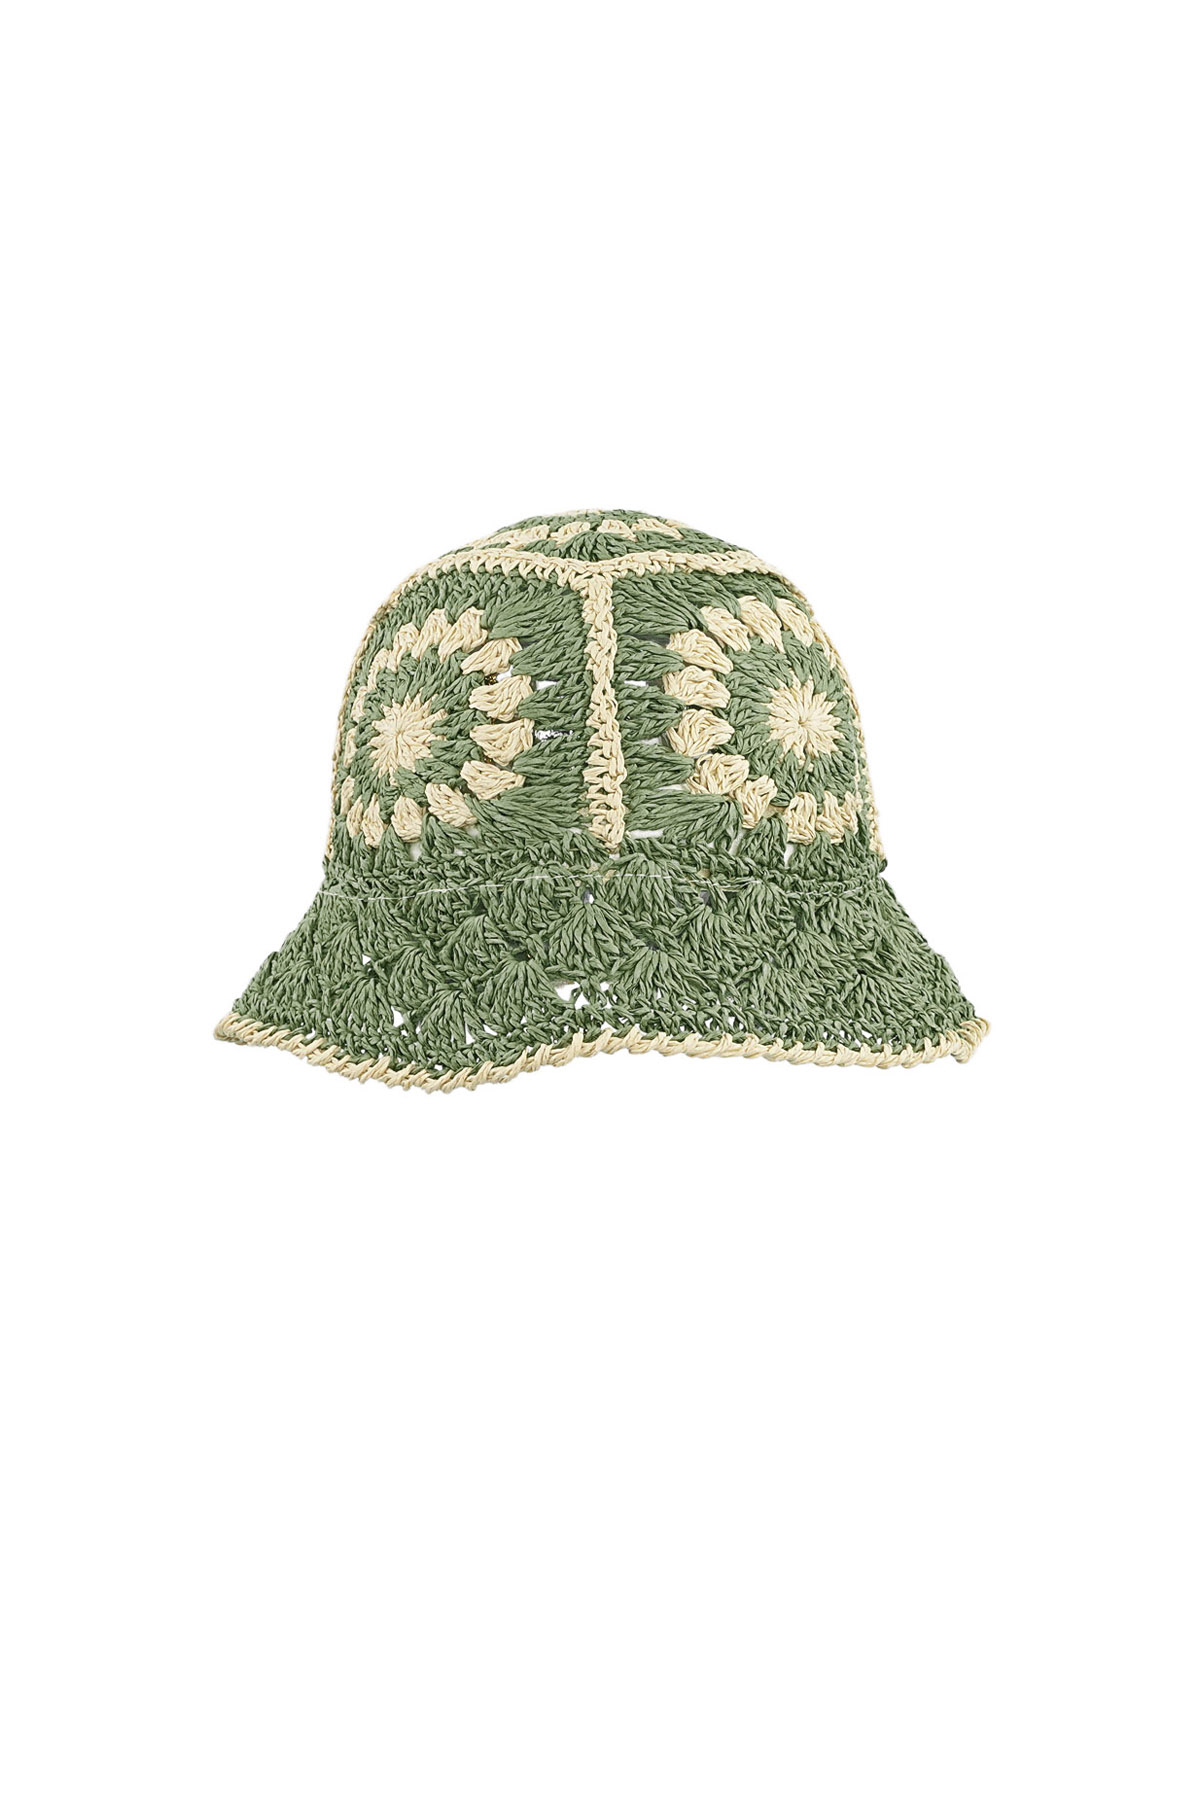 Crochet hoedje met bloemen - donkergroen h5 